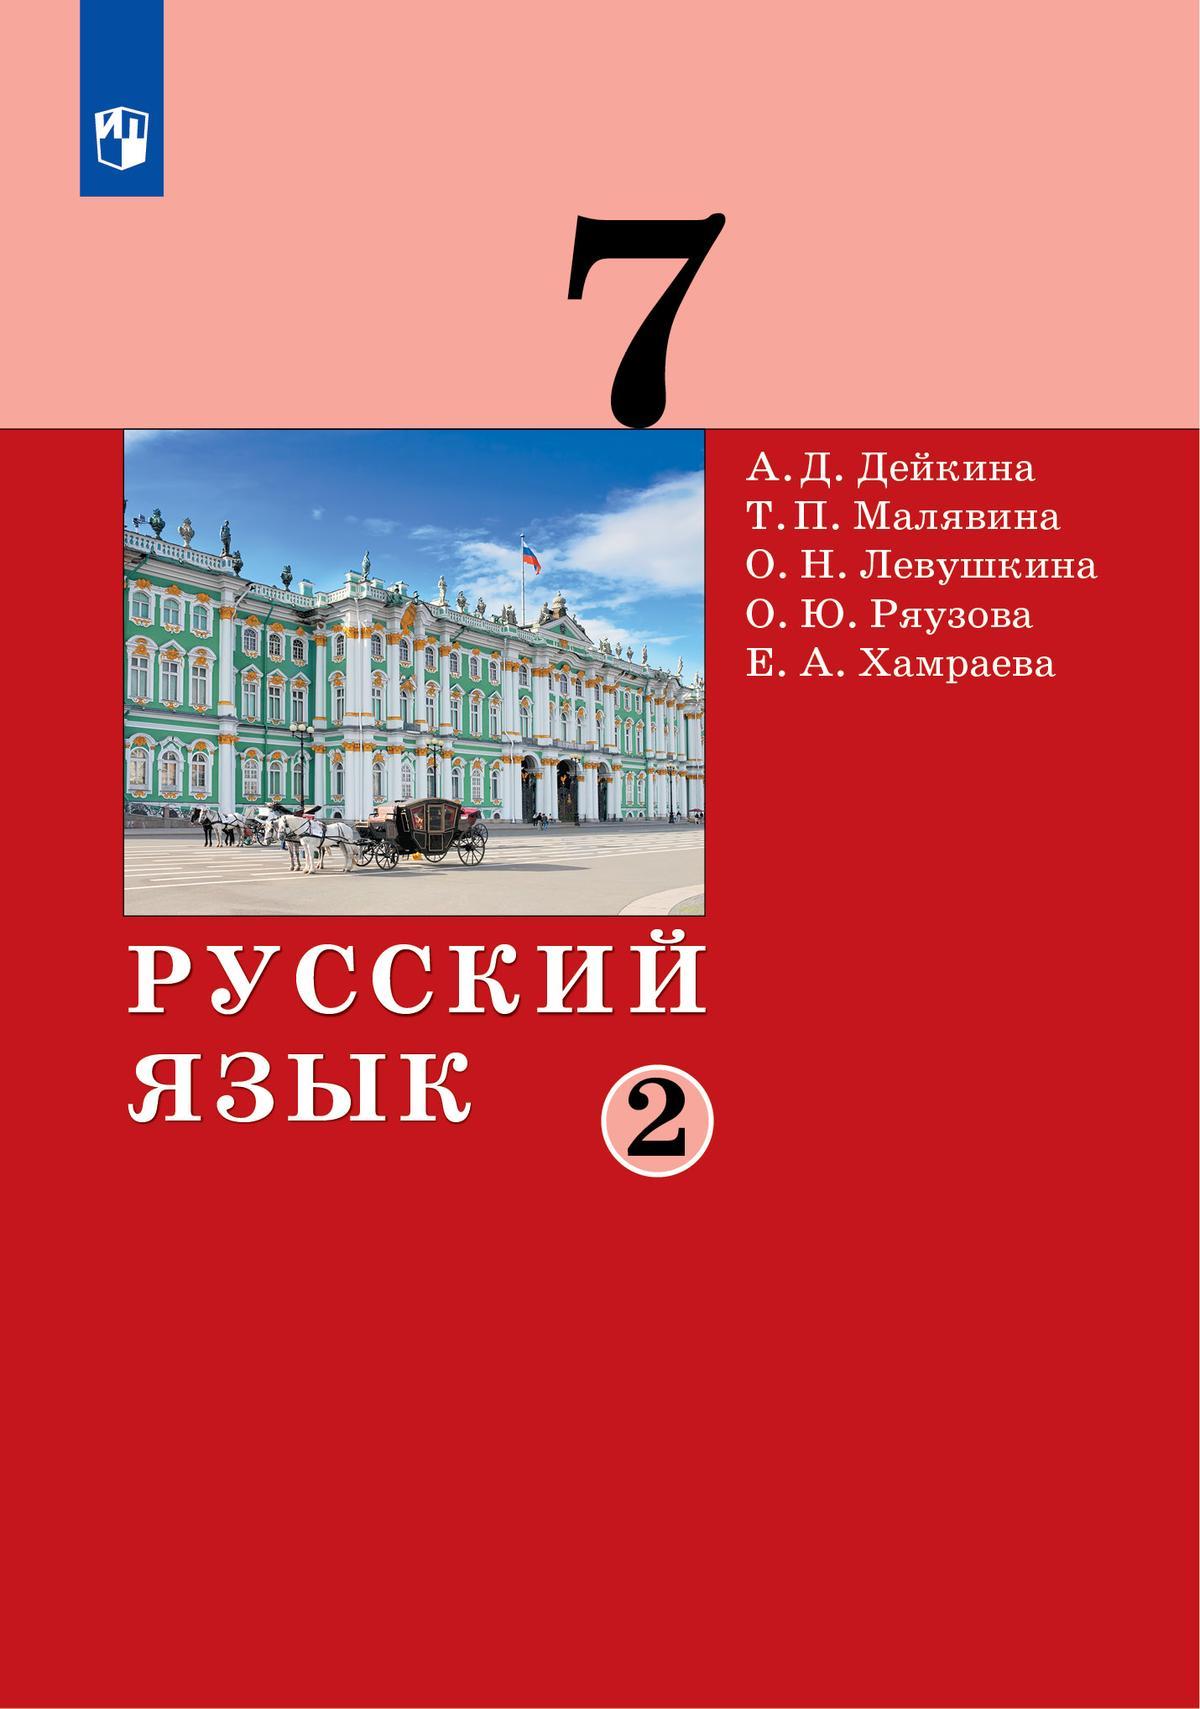 Русский язык. 7 класс. Электронная форма учебника. В 2 частях. Часть 2 1